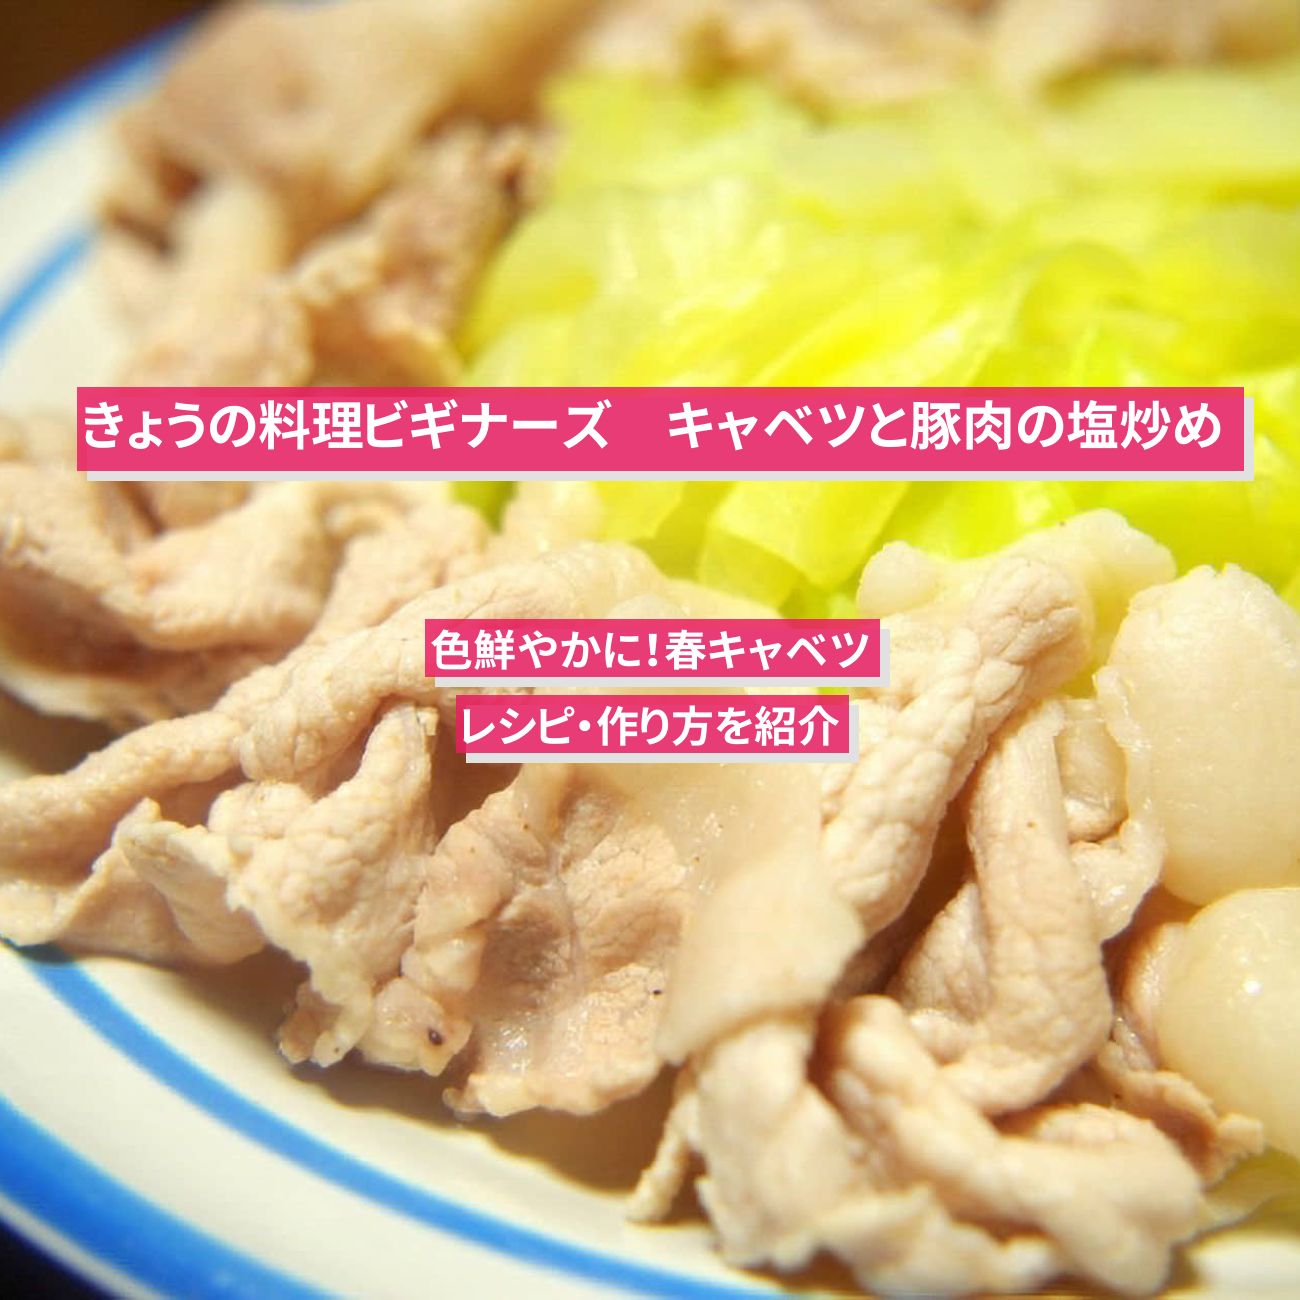 【きょうの料理ビギナーズ】『キャベツと豚肉の塩炒め』のレシピ・作り方を紹介